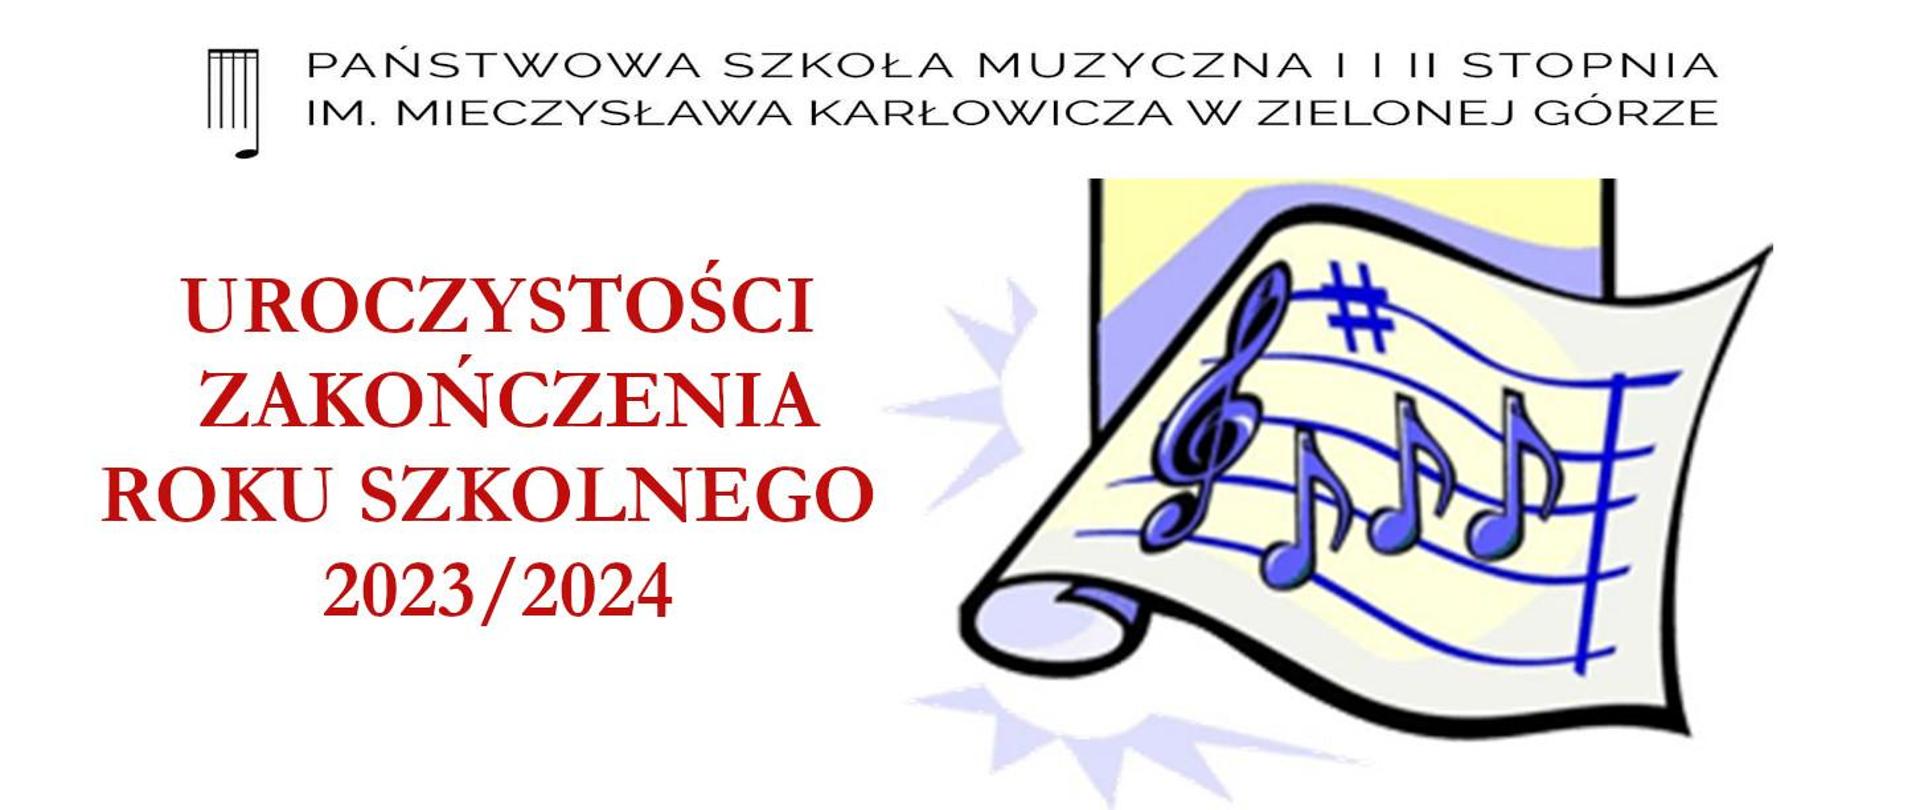 grafika przedstawia afisz zakończenia roku szkolnego 2023/2024, całość na jasnym tle, u góry logo i nazwa szkoły, z prawej strony fioletowe nutki z pięciolinią.